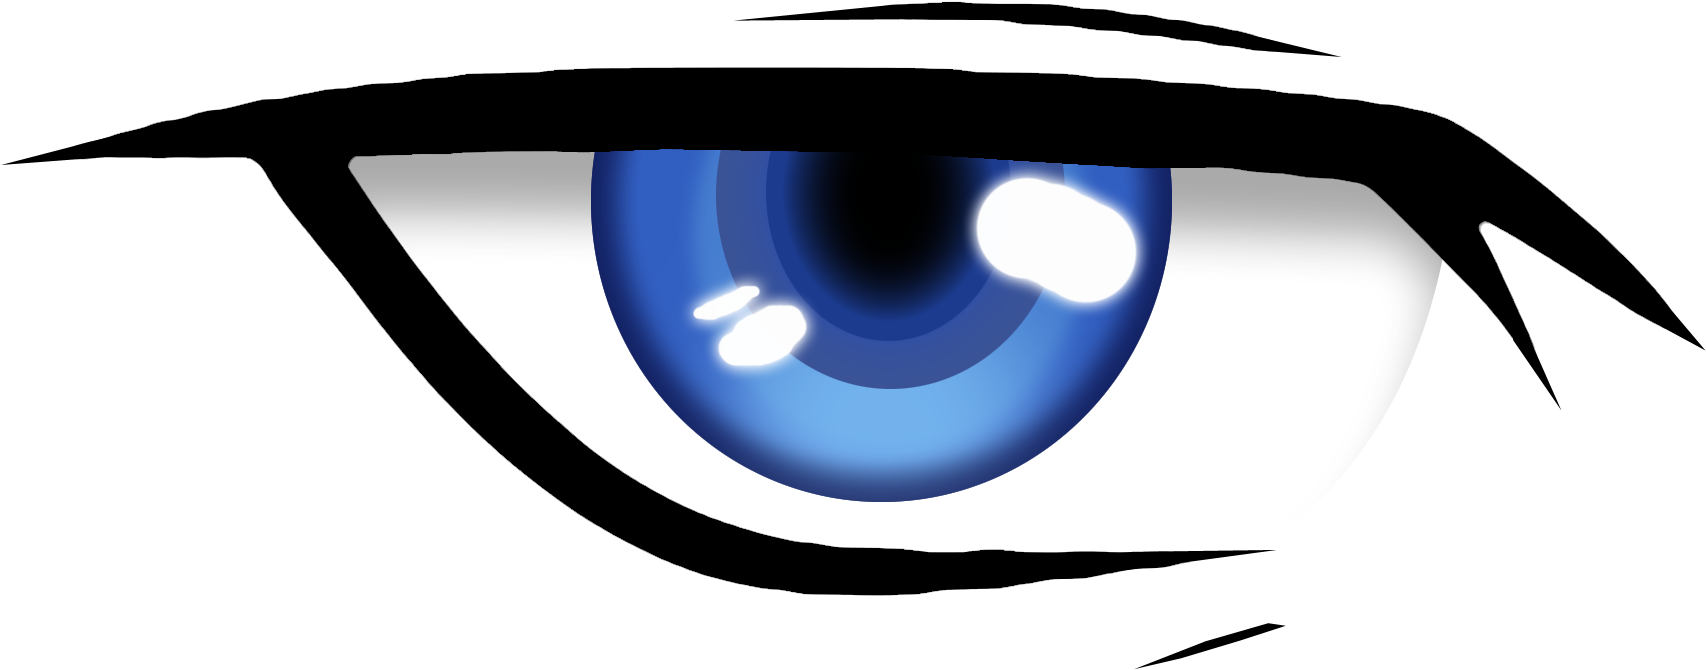 Blue Anime Eyes PNG Image Background